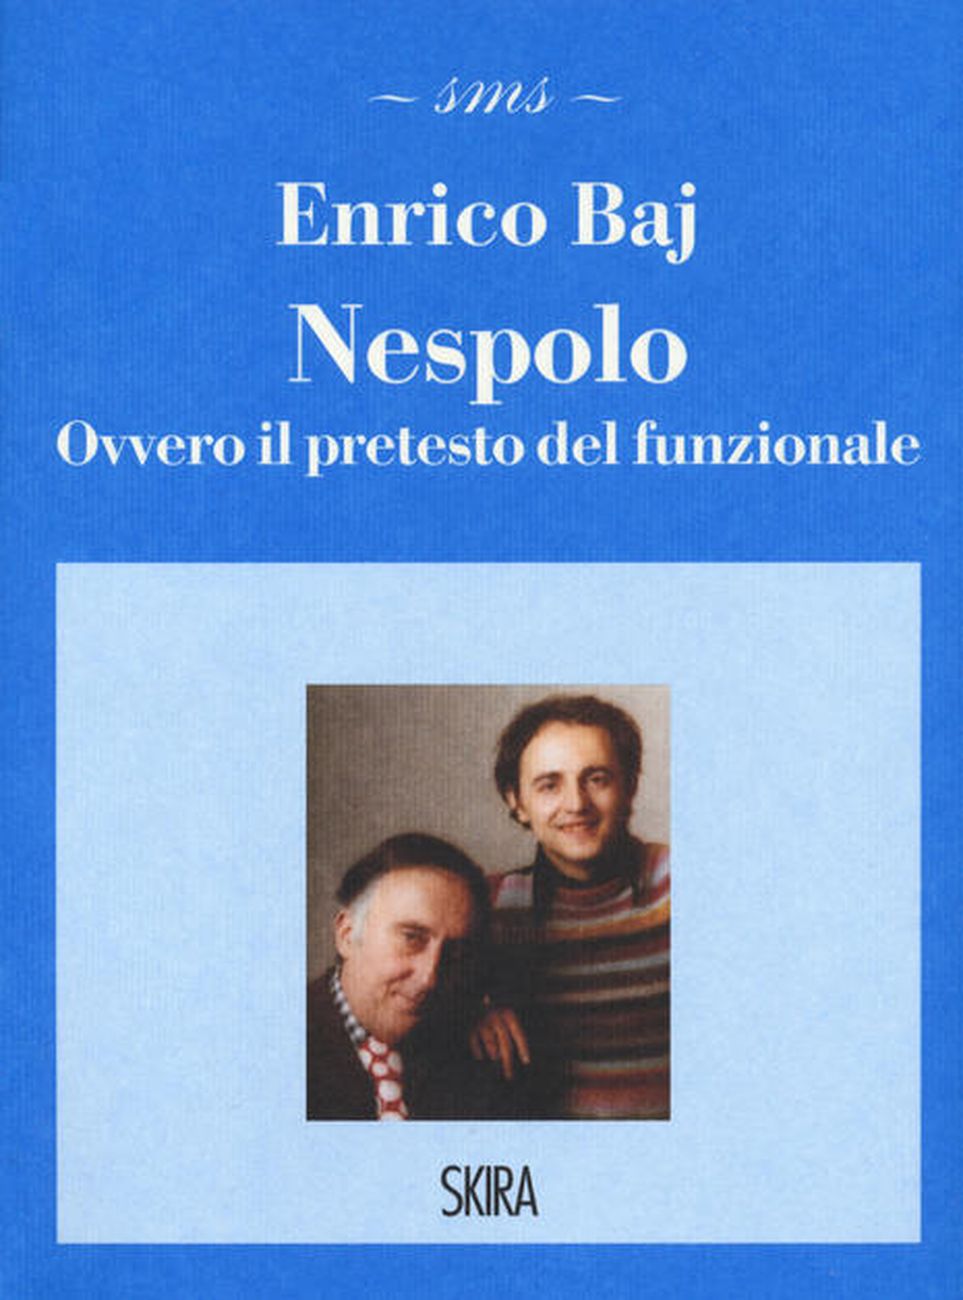 Enrico Baj - Nespolo. Ovvero il pretesto del funzionale (Skira, Milano 2020)